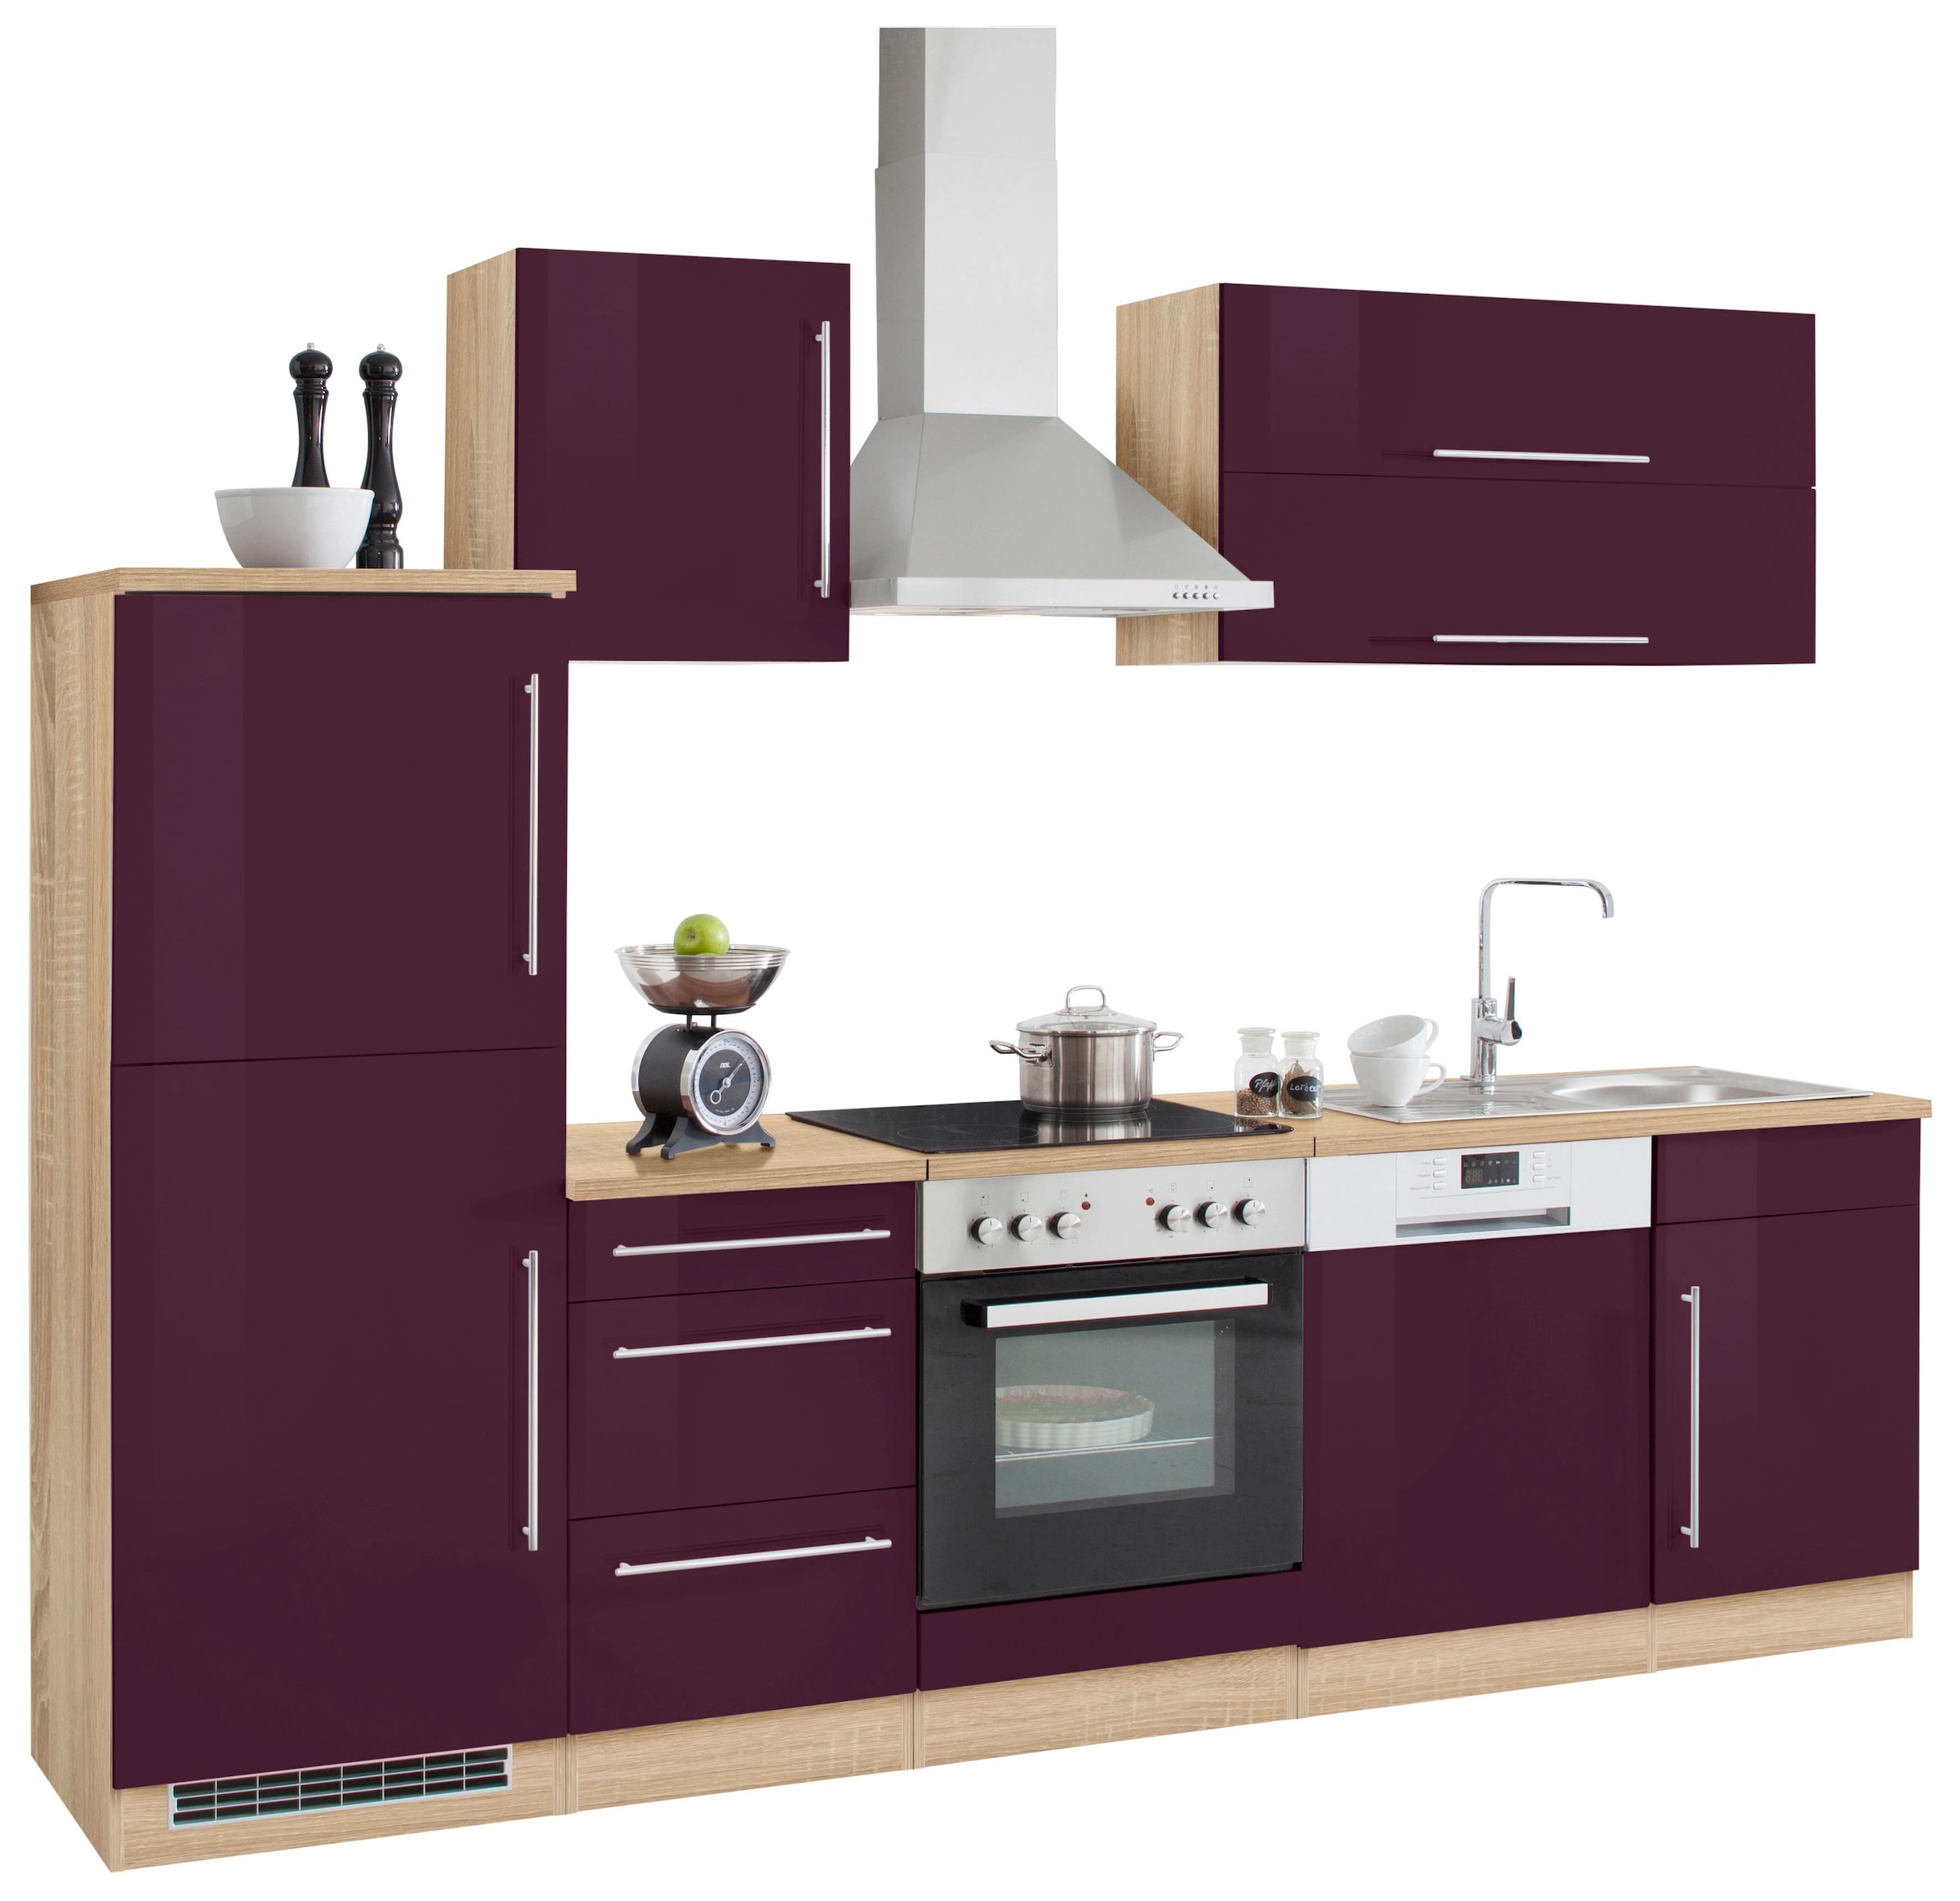 Preisvergleich für HELD MÖBEL Küchenzeile Samos, ohne E-Geräte, Breite 280  cm, in der Farbe Lila | Ladendirekt